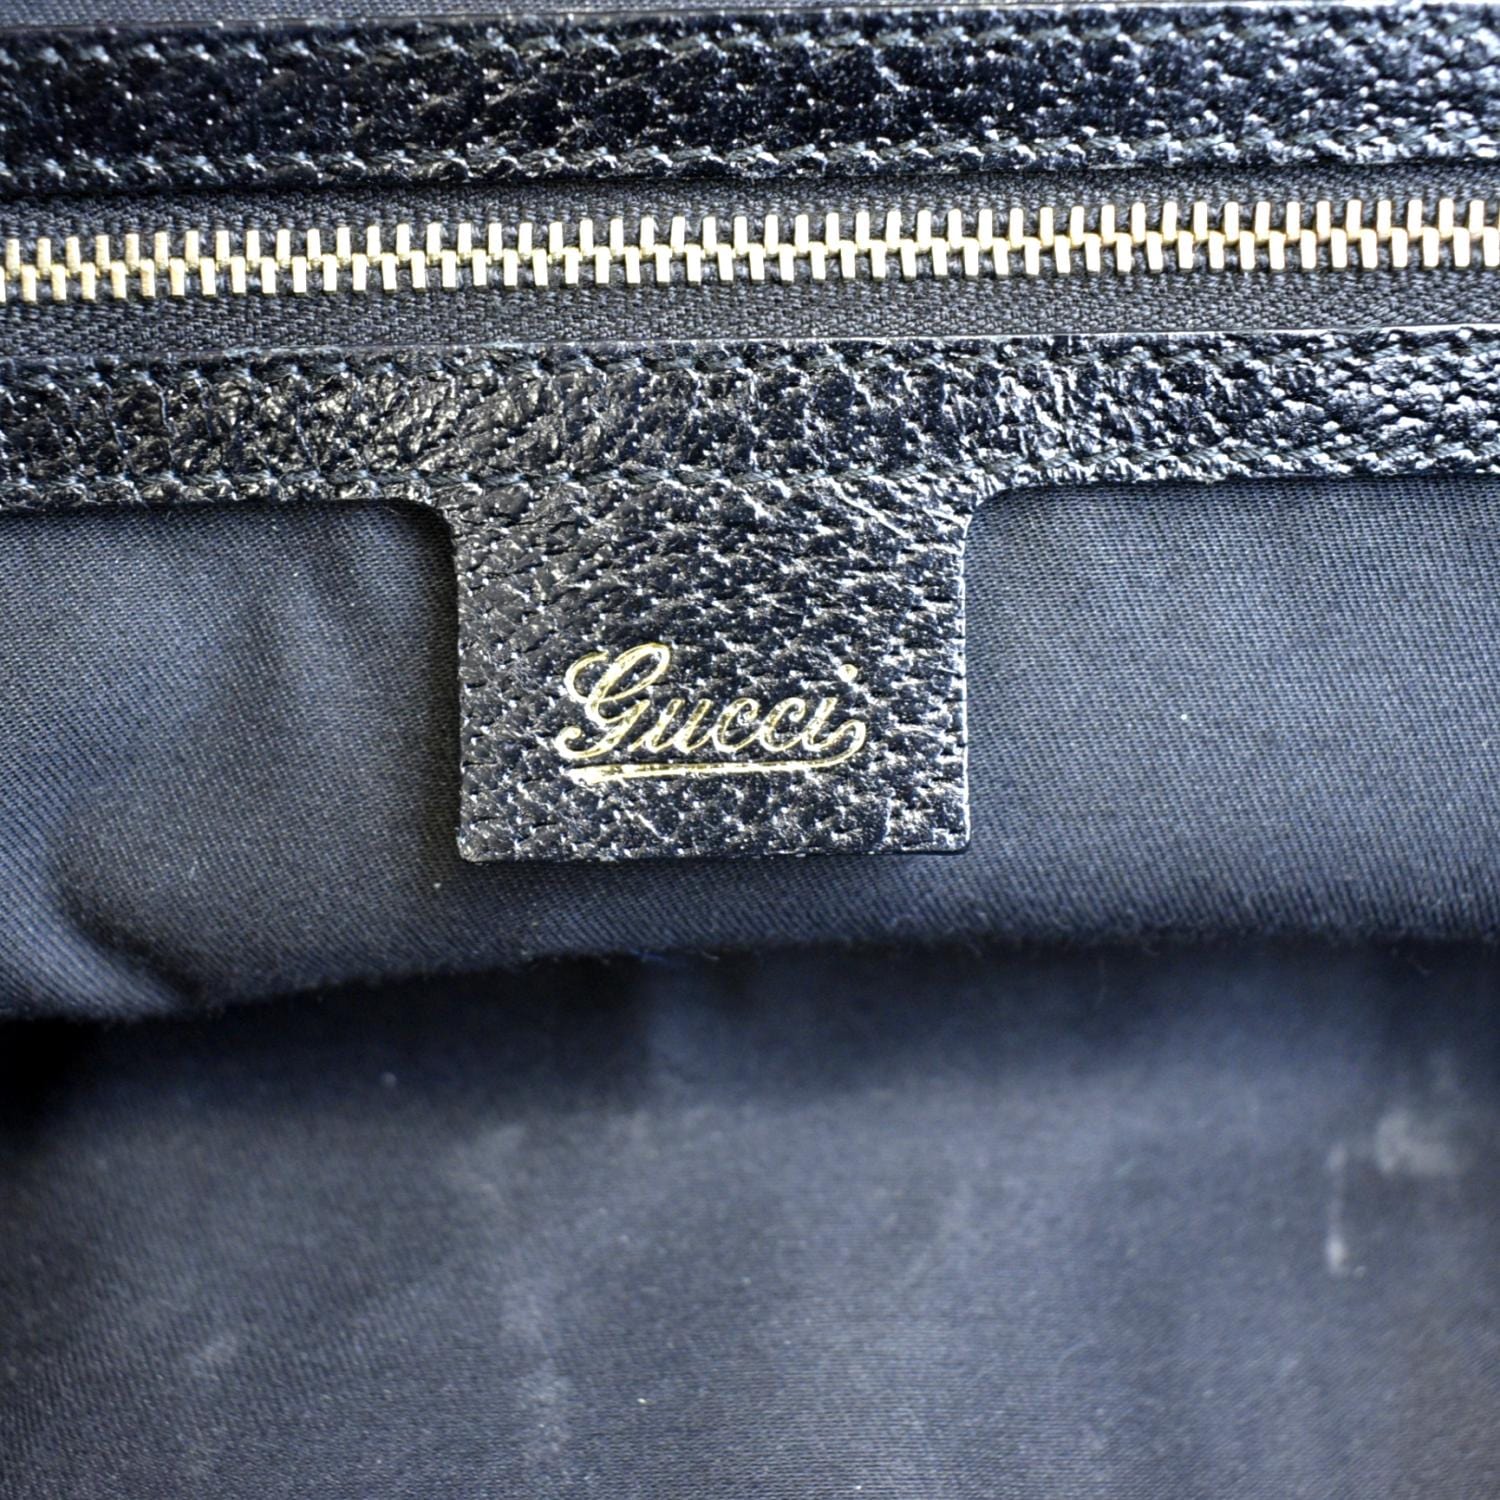 Gucci Bamboo Black Monogram Leather Bullet Shoulder Bag Purse